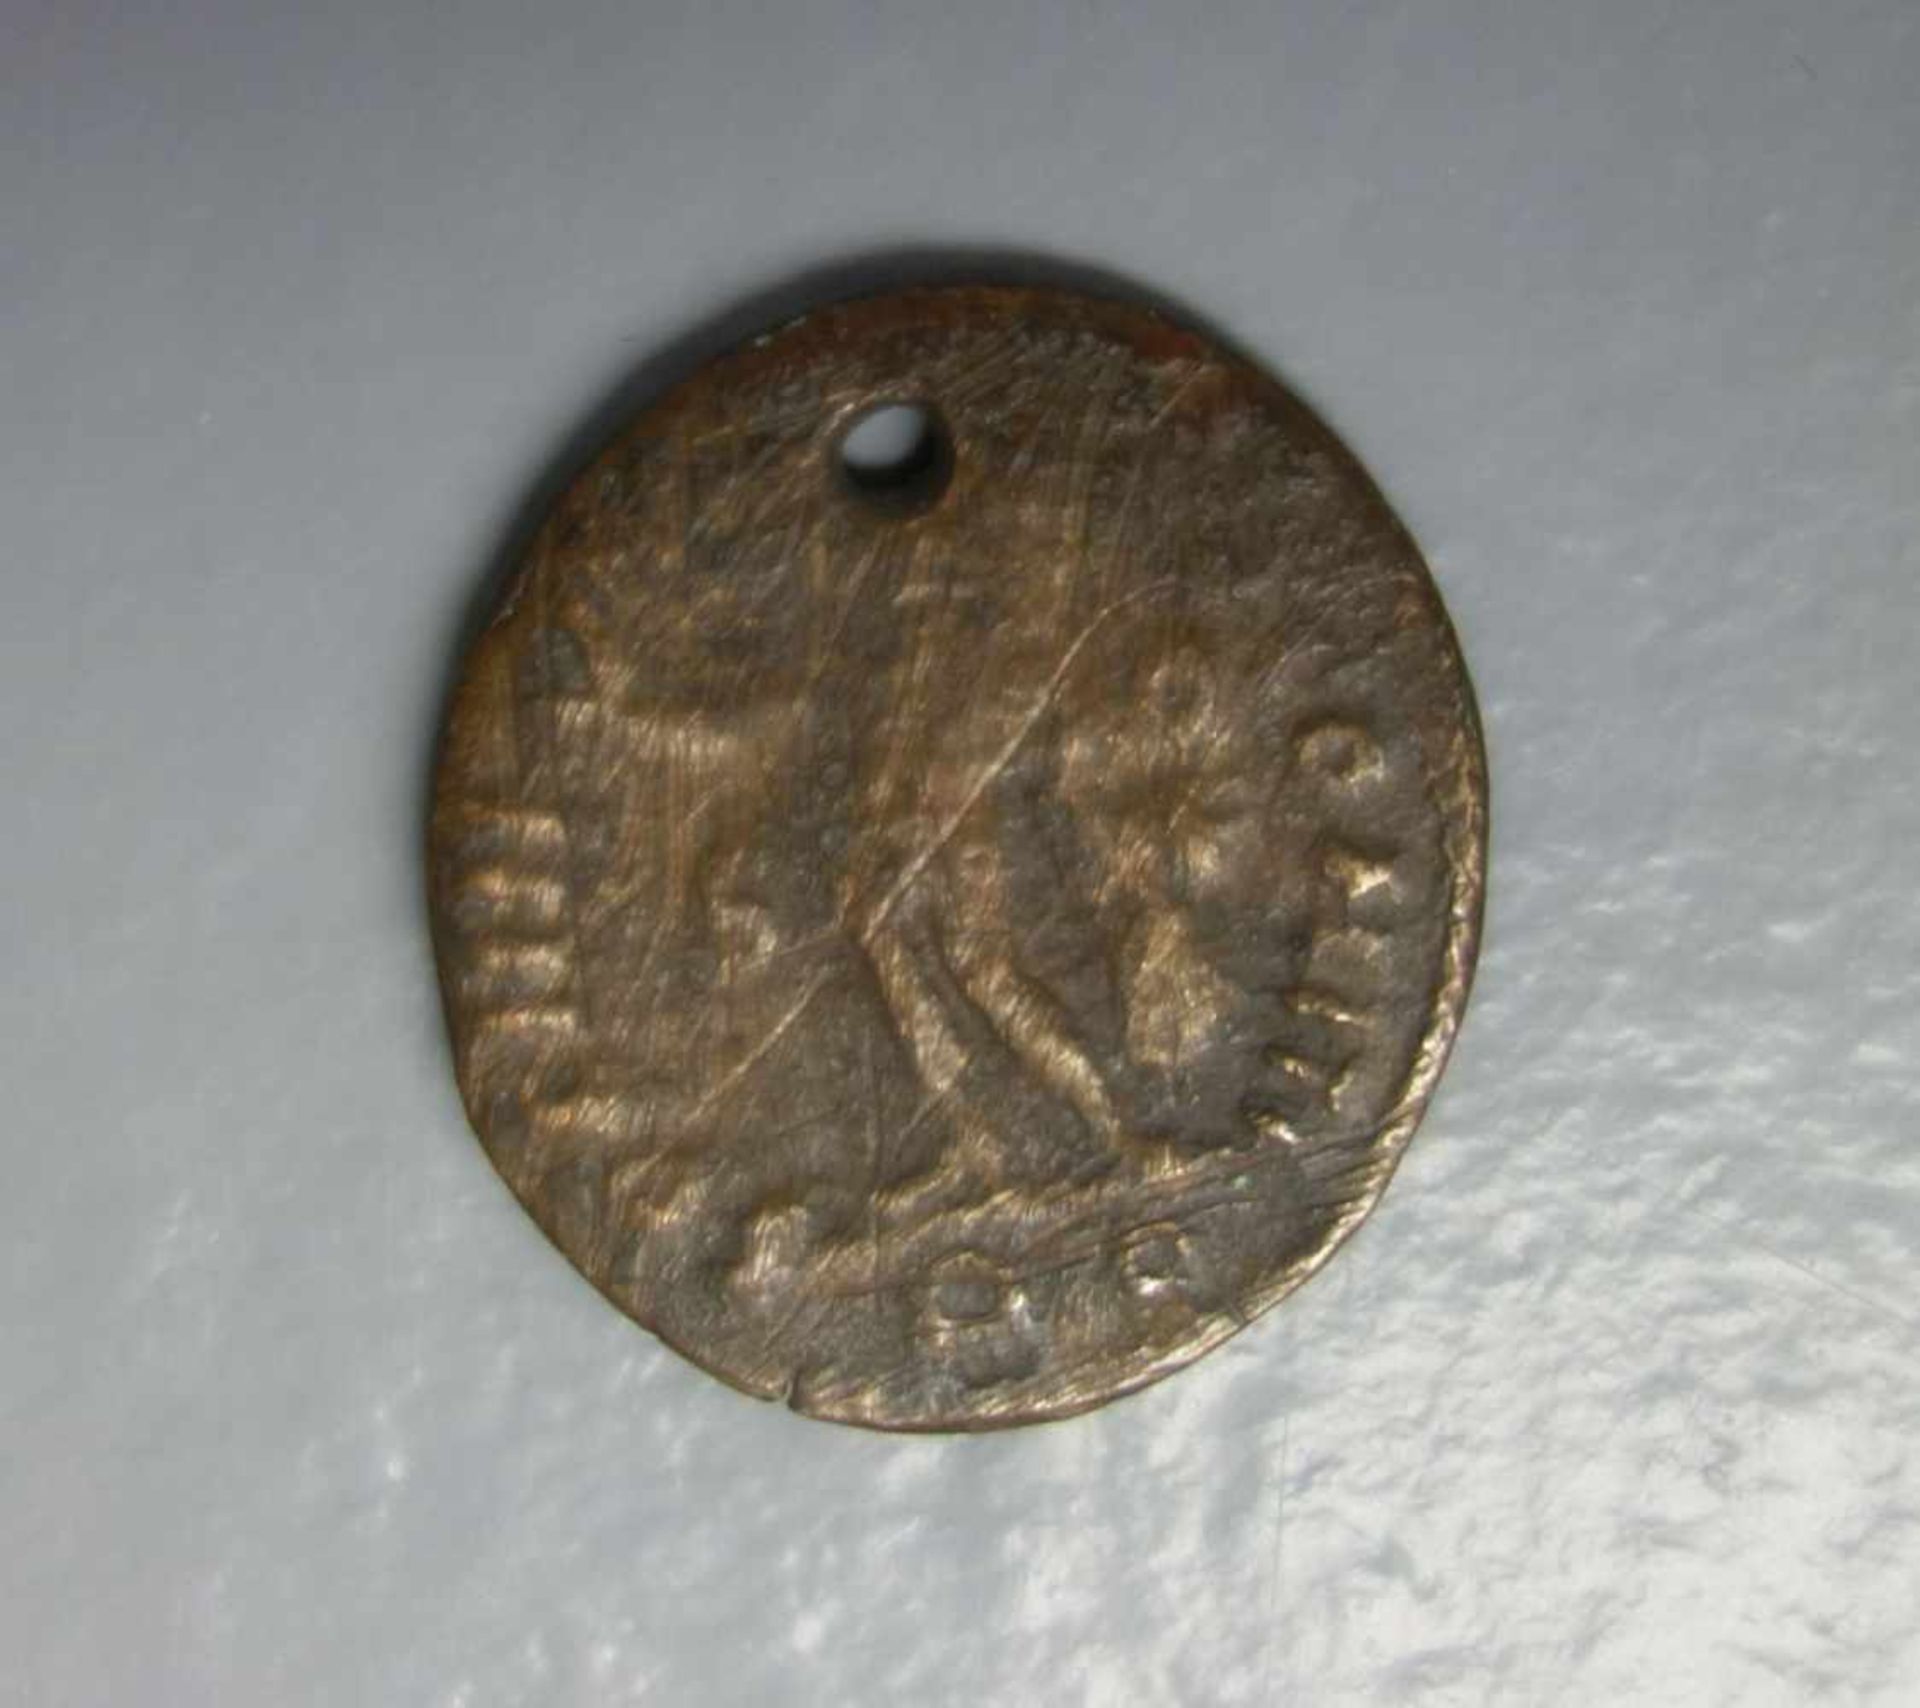 MÜNZE: DENAR (RÖM. KAISERZEIT 200-300 n. Chr.) / coin. Messing/Kupfer. Antike Münze der römischen - Bild 2 aus 2